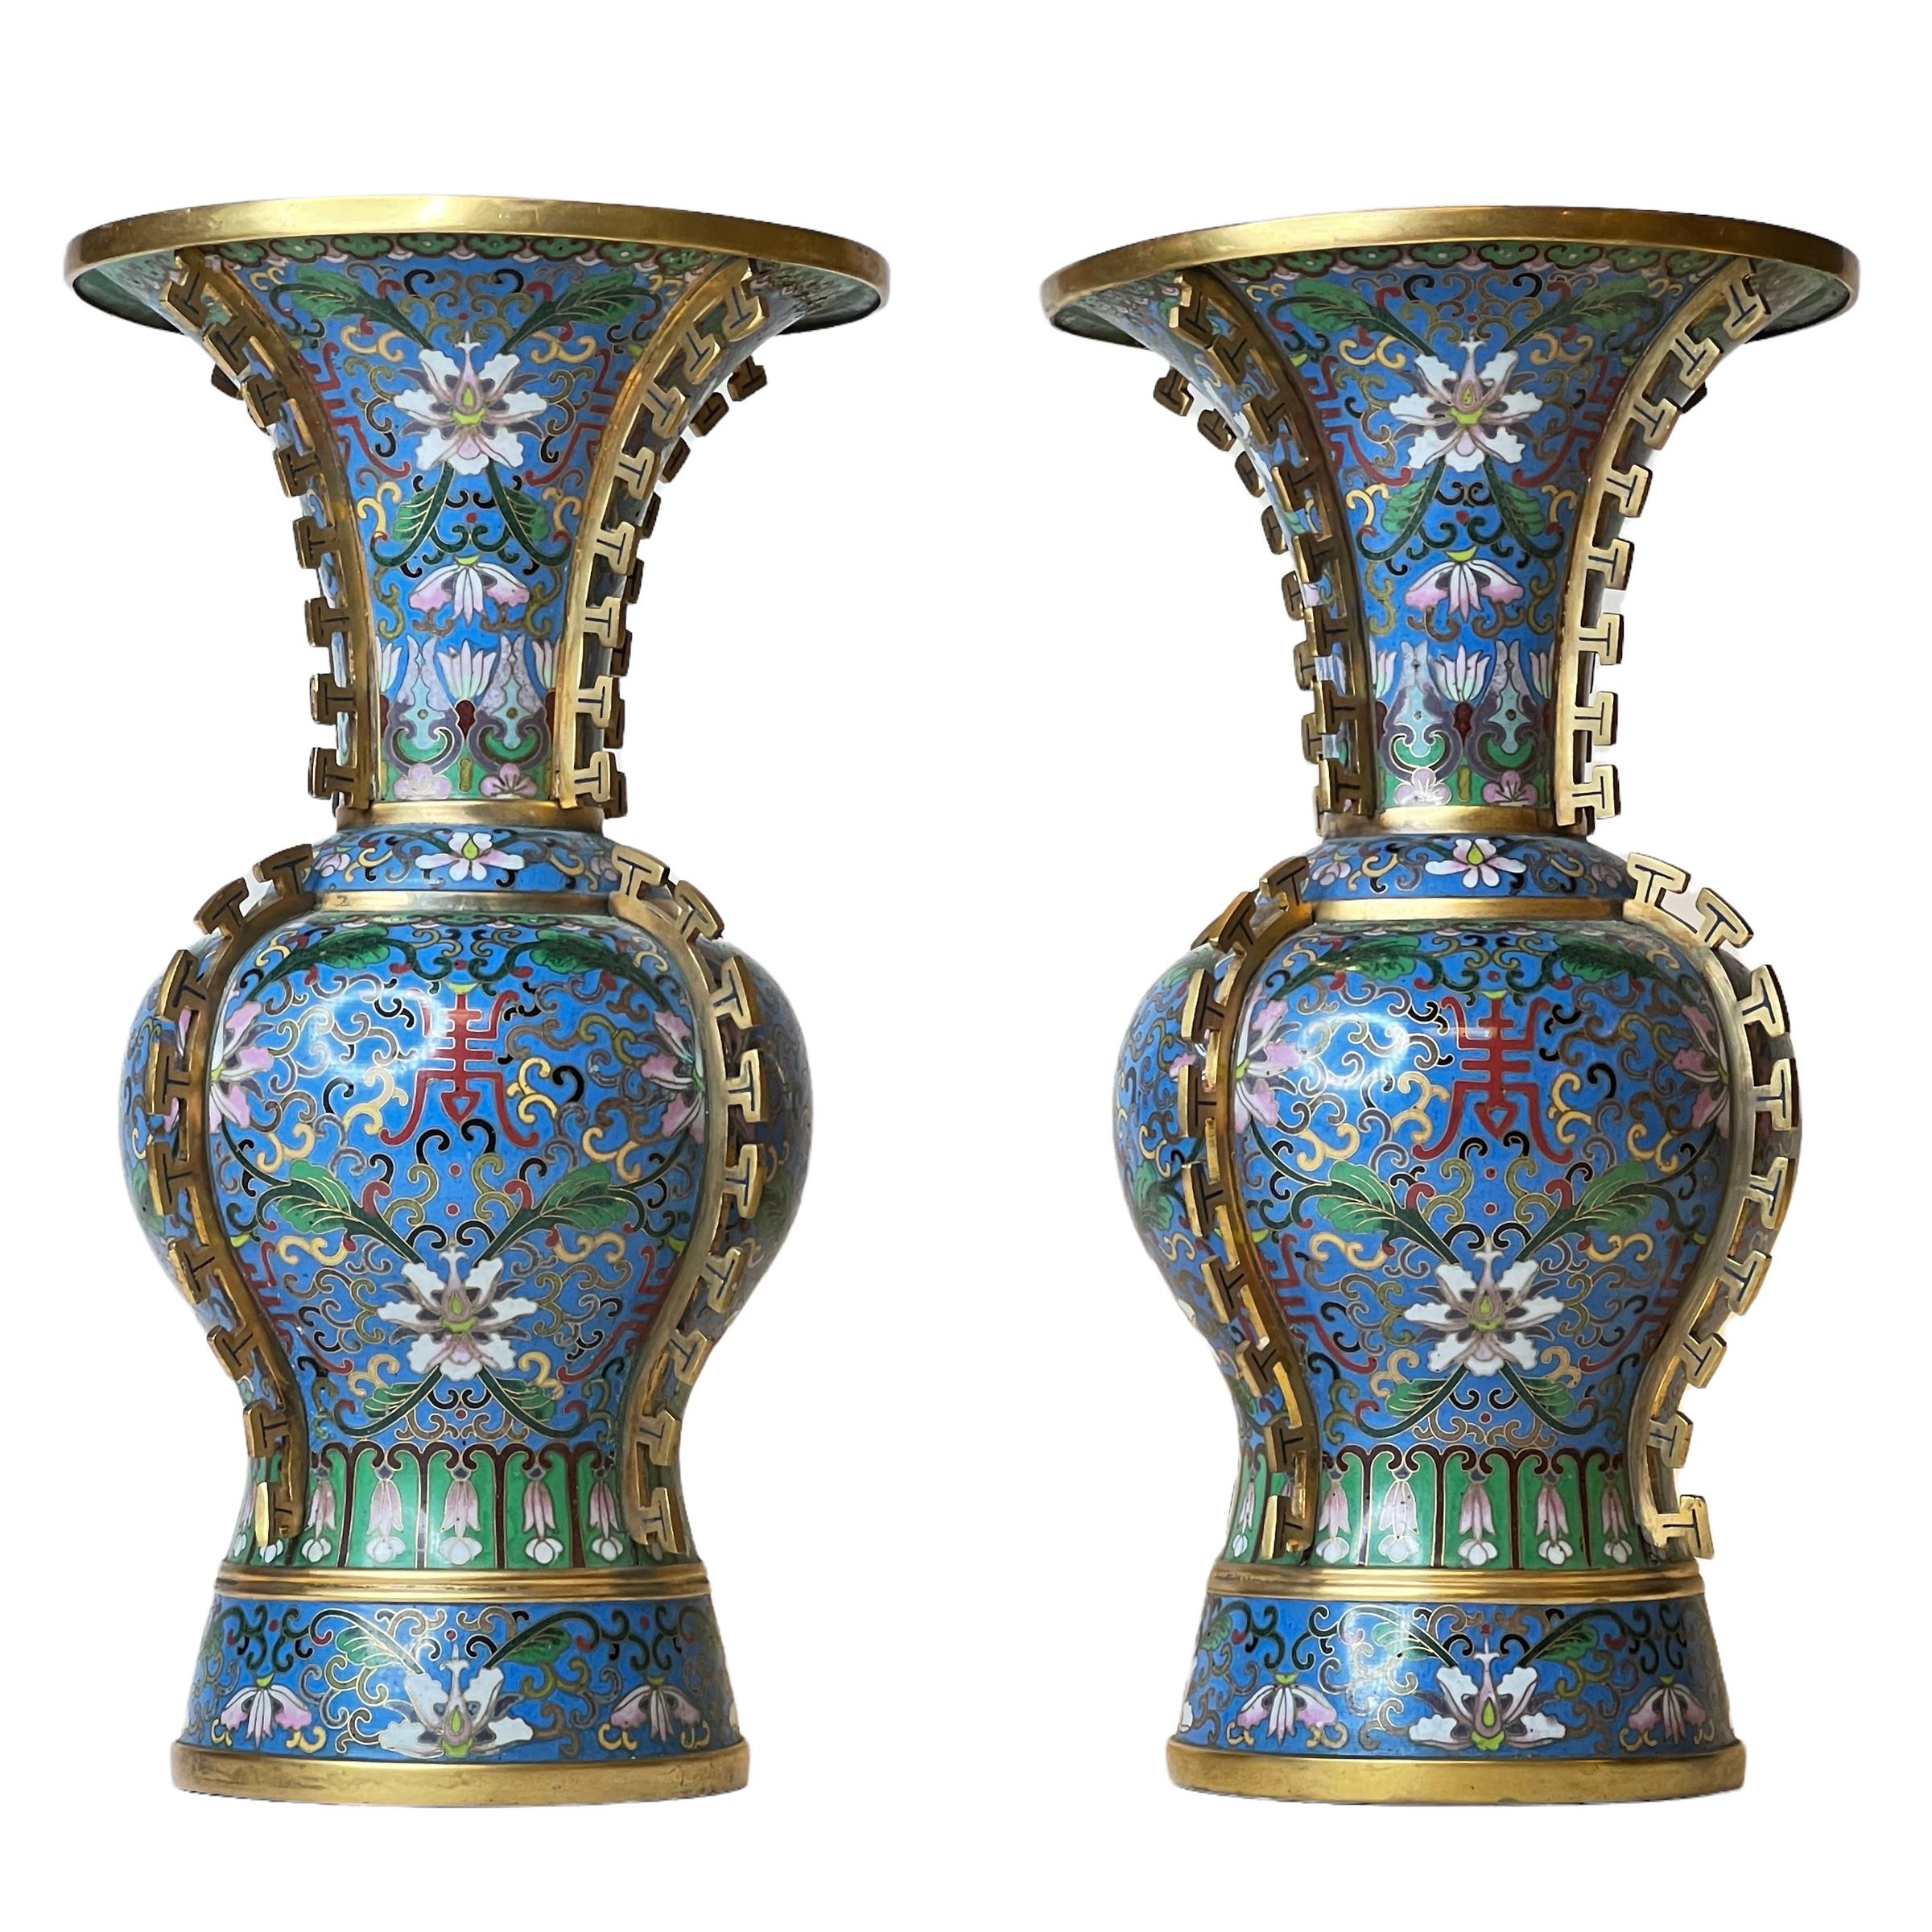 Paar chinesische Cloisonné-Emaille-Vasen mit floralen Motiven auf blauem Grund und vergoldeten Beschlägen, die stilisierte Rückenflossen eines Drachens darstellen.